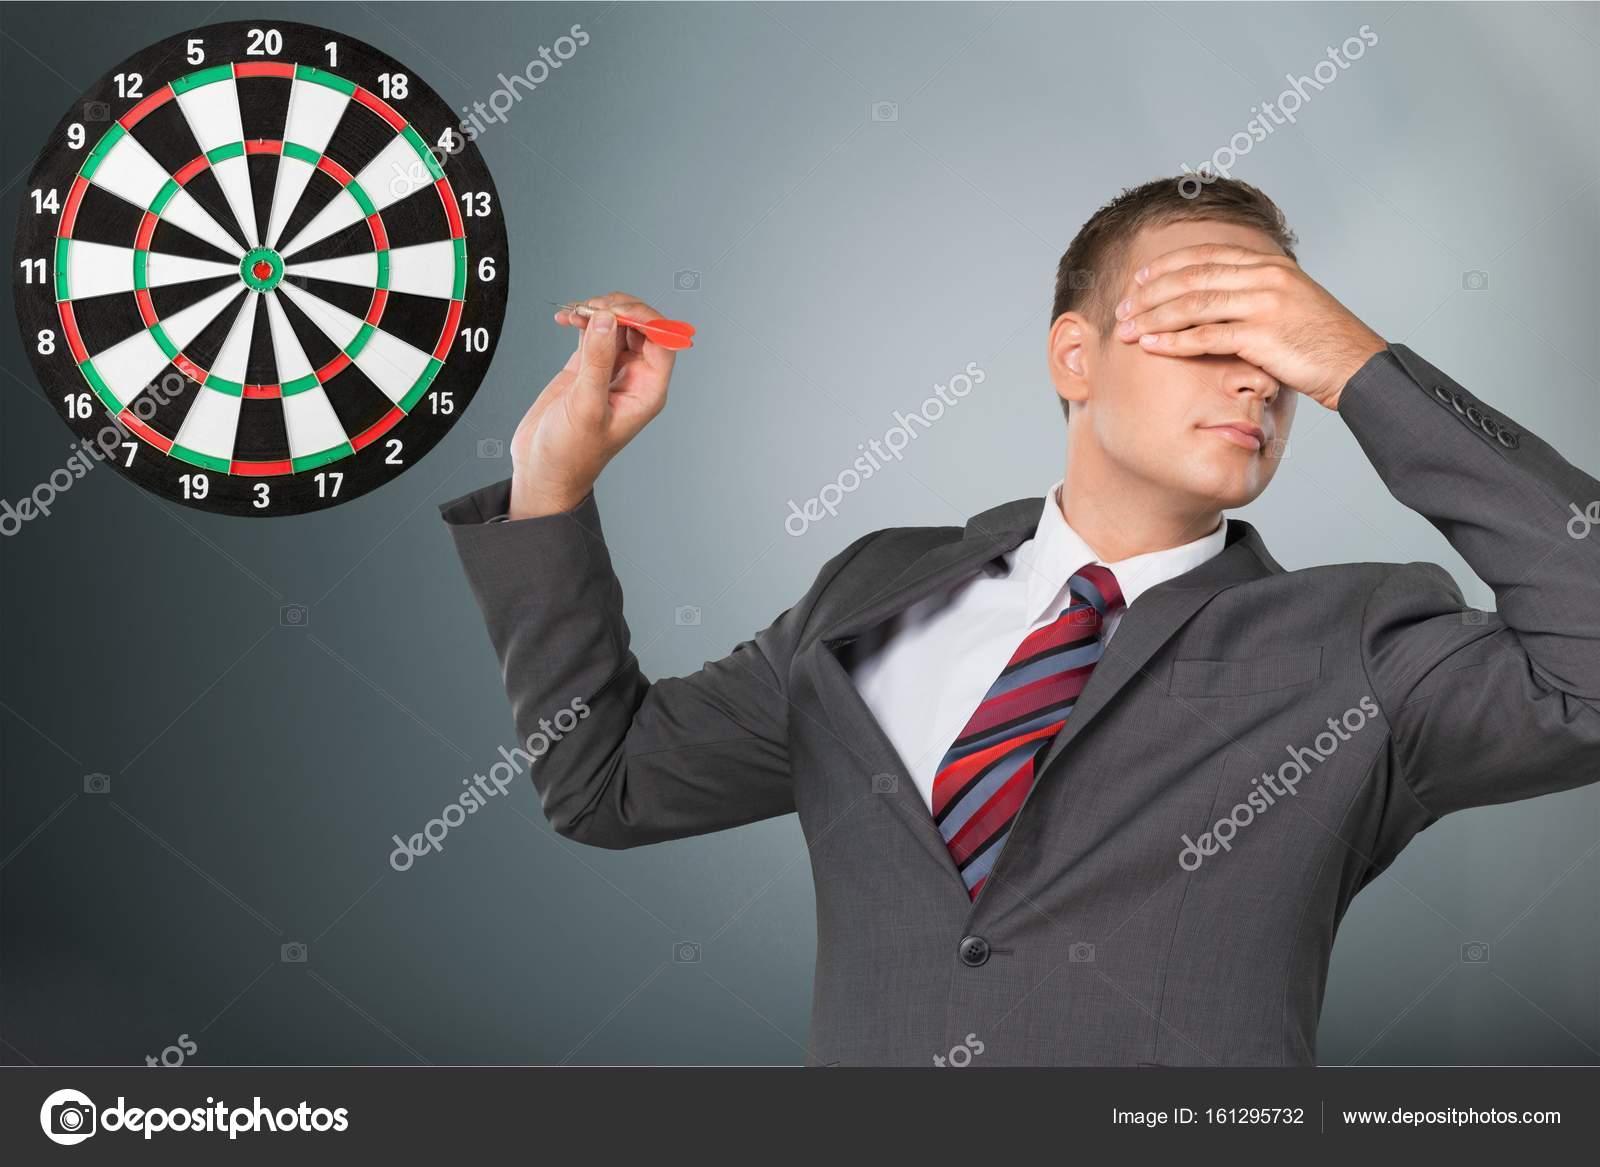 depositphotos_161295732-stock-photo-young-businessman-playing-darts.jpg